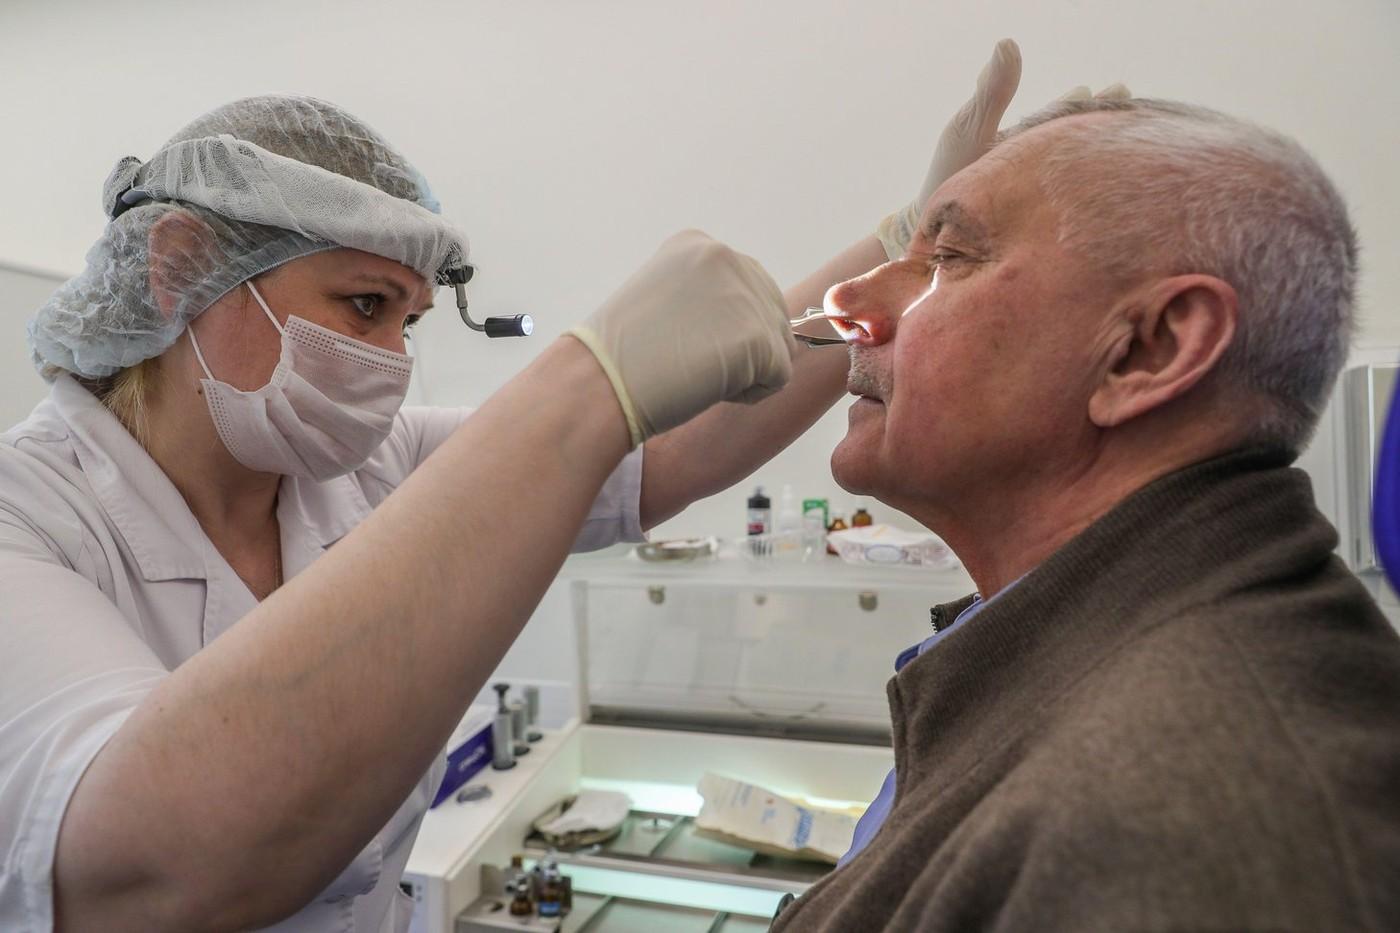 Un bărbat a ajuns la spital și medicii i-au descoperit 150 de gândaci în nas. Pacientul a fost uluit, fiindcă nu a simțit nimic